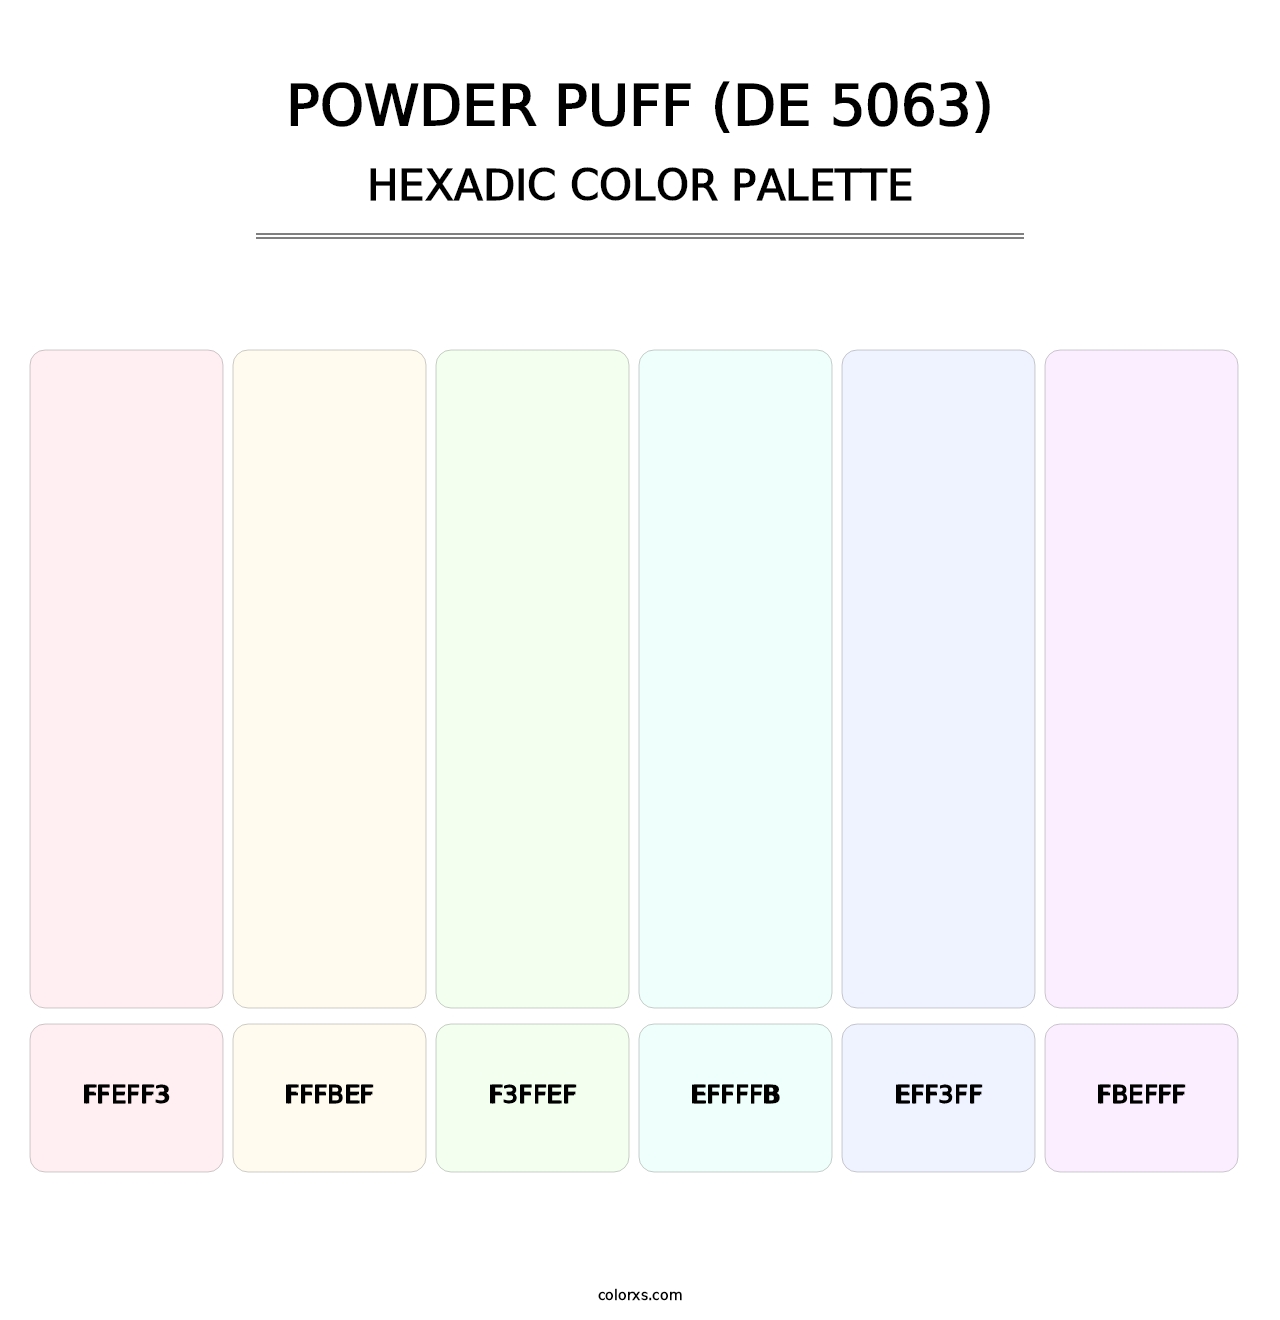 Powder Puff (DE 5063) - Hexadic Color Palette